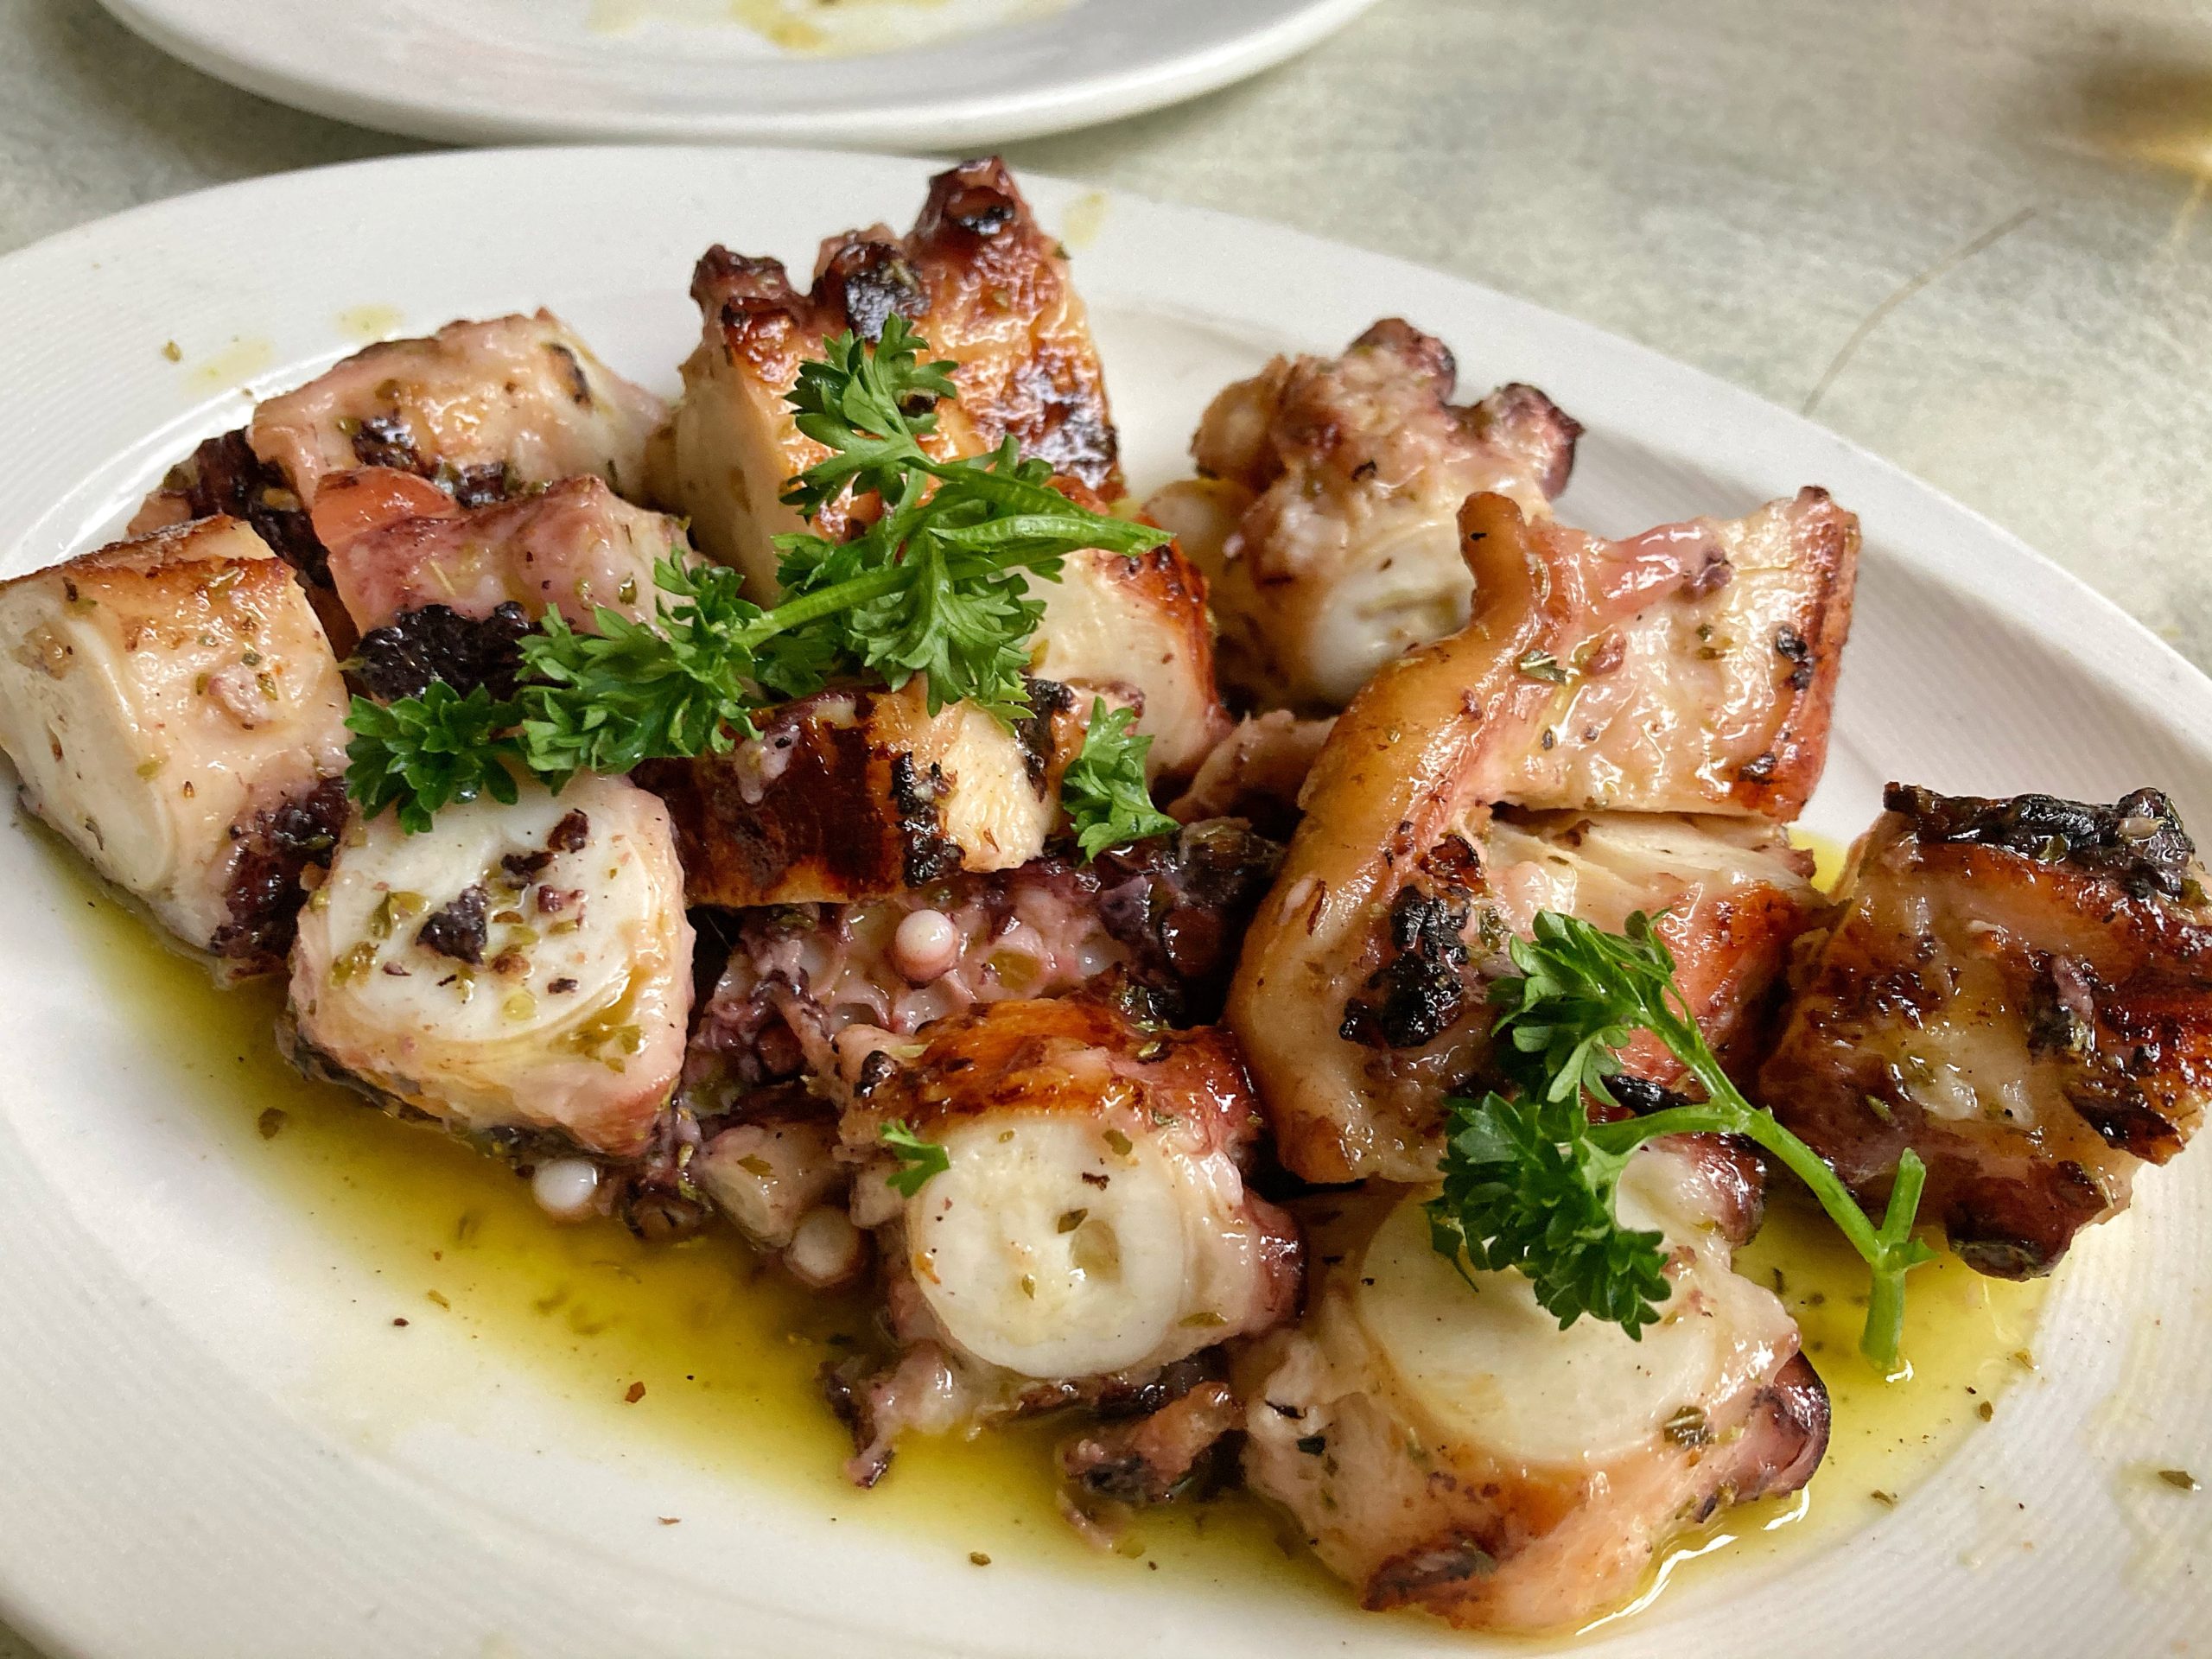 グルメ ギリシャ料理 Blu Kouzina デンプシー ギリシャ産オリーブオイルや野菜を使った豊富なメニュー Mermaid World